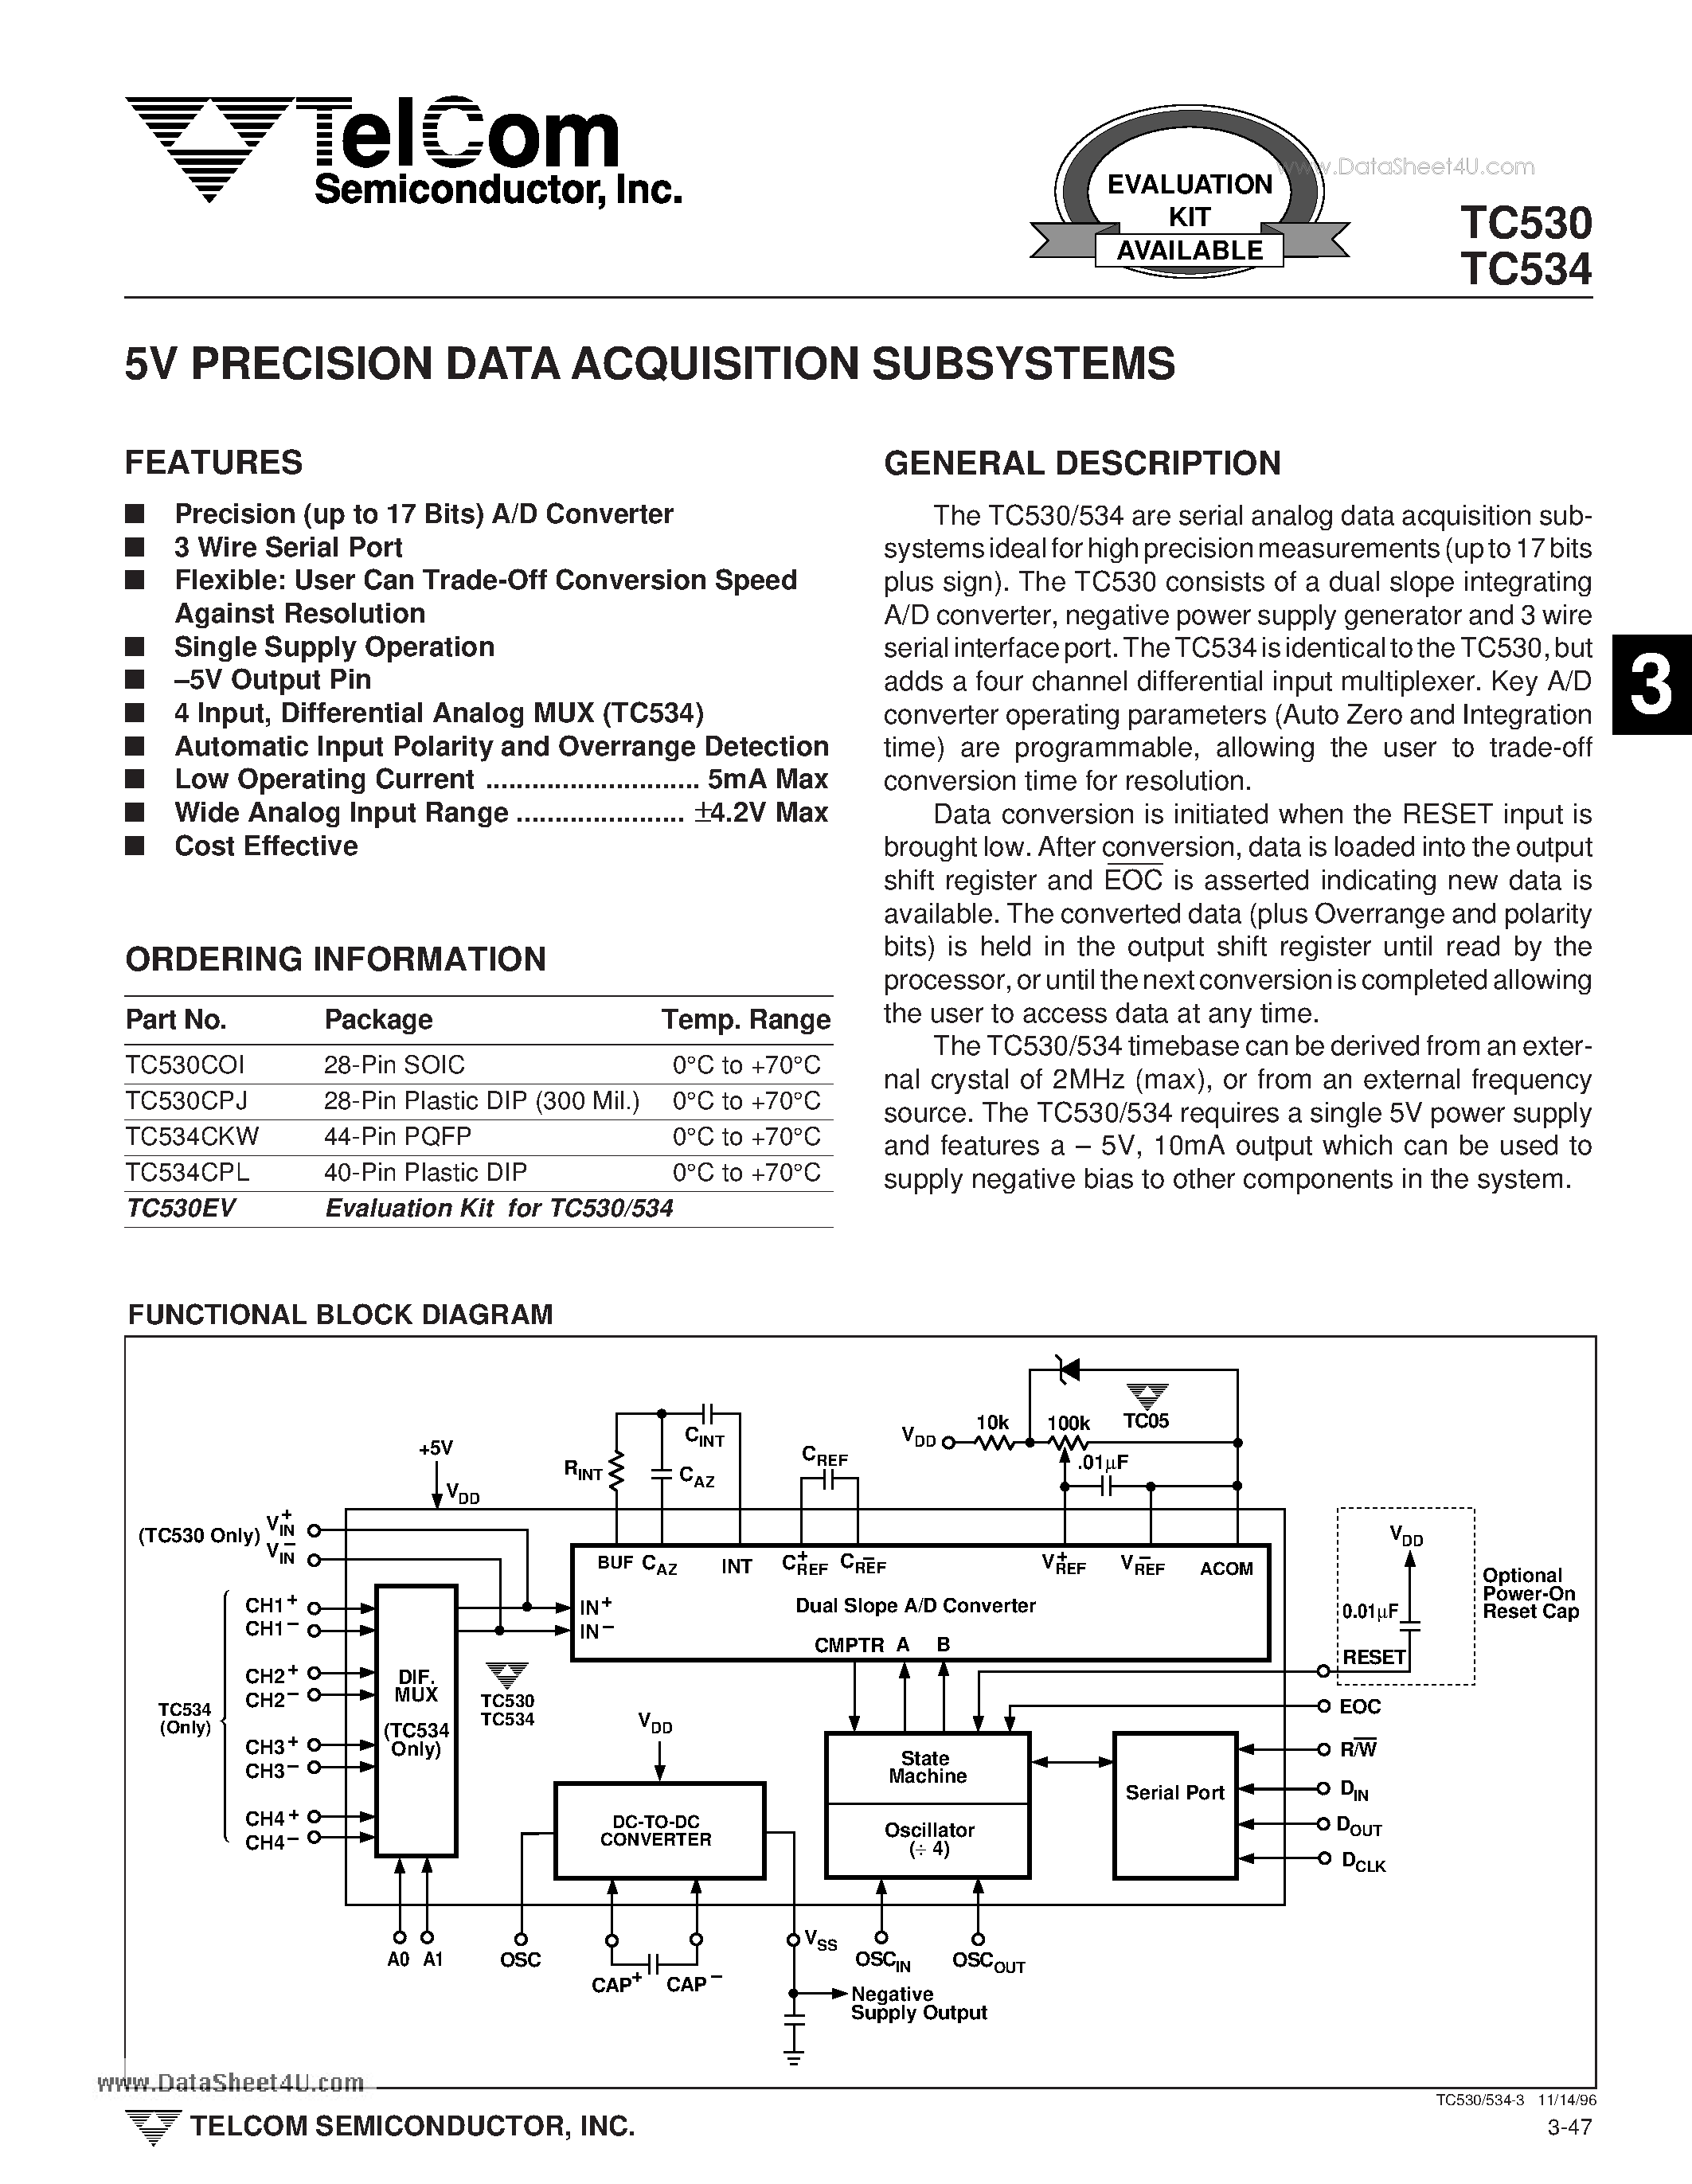 Даташит TC530 - (TC530 / TC534) 5V PRECISION DATA ACQUISITION SUBSYSTEMS страница 1